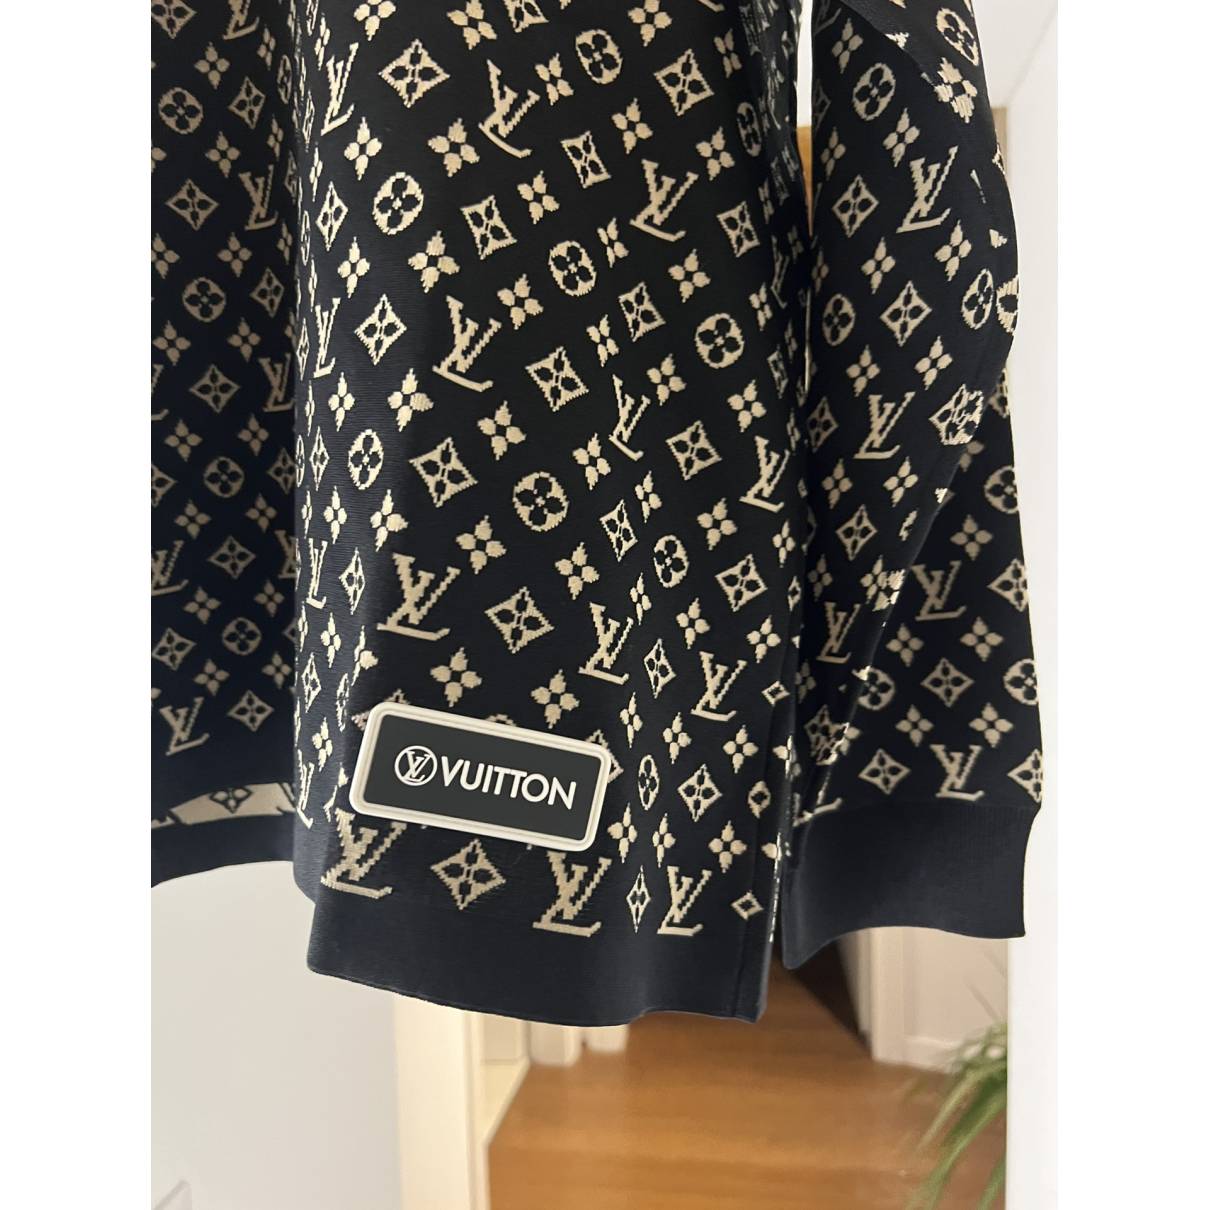 Louis Vuitton Sweatshirt – ClothingStudioQA